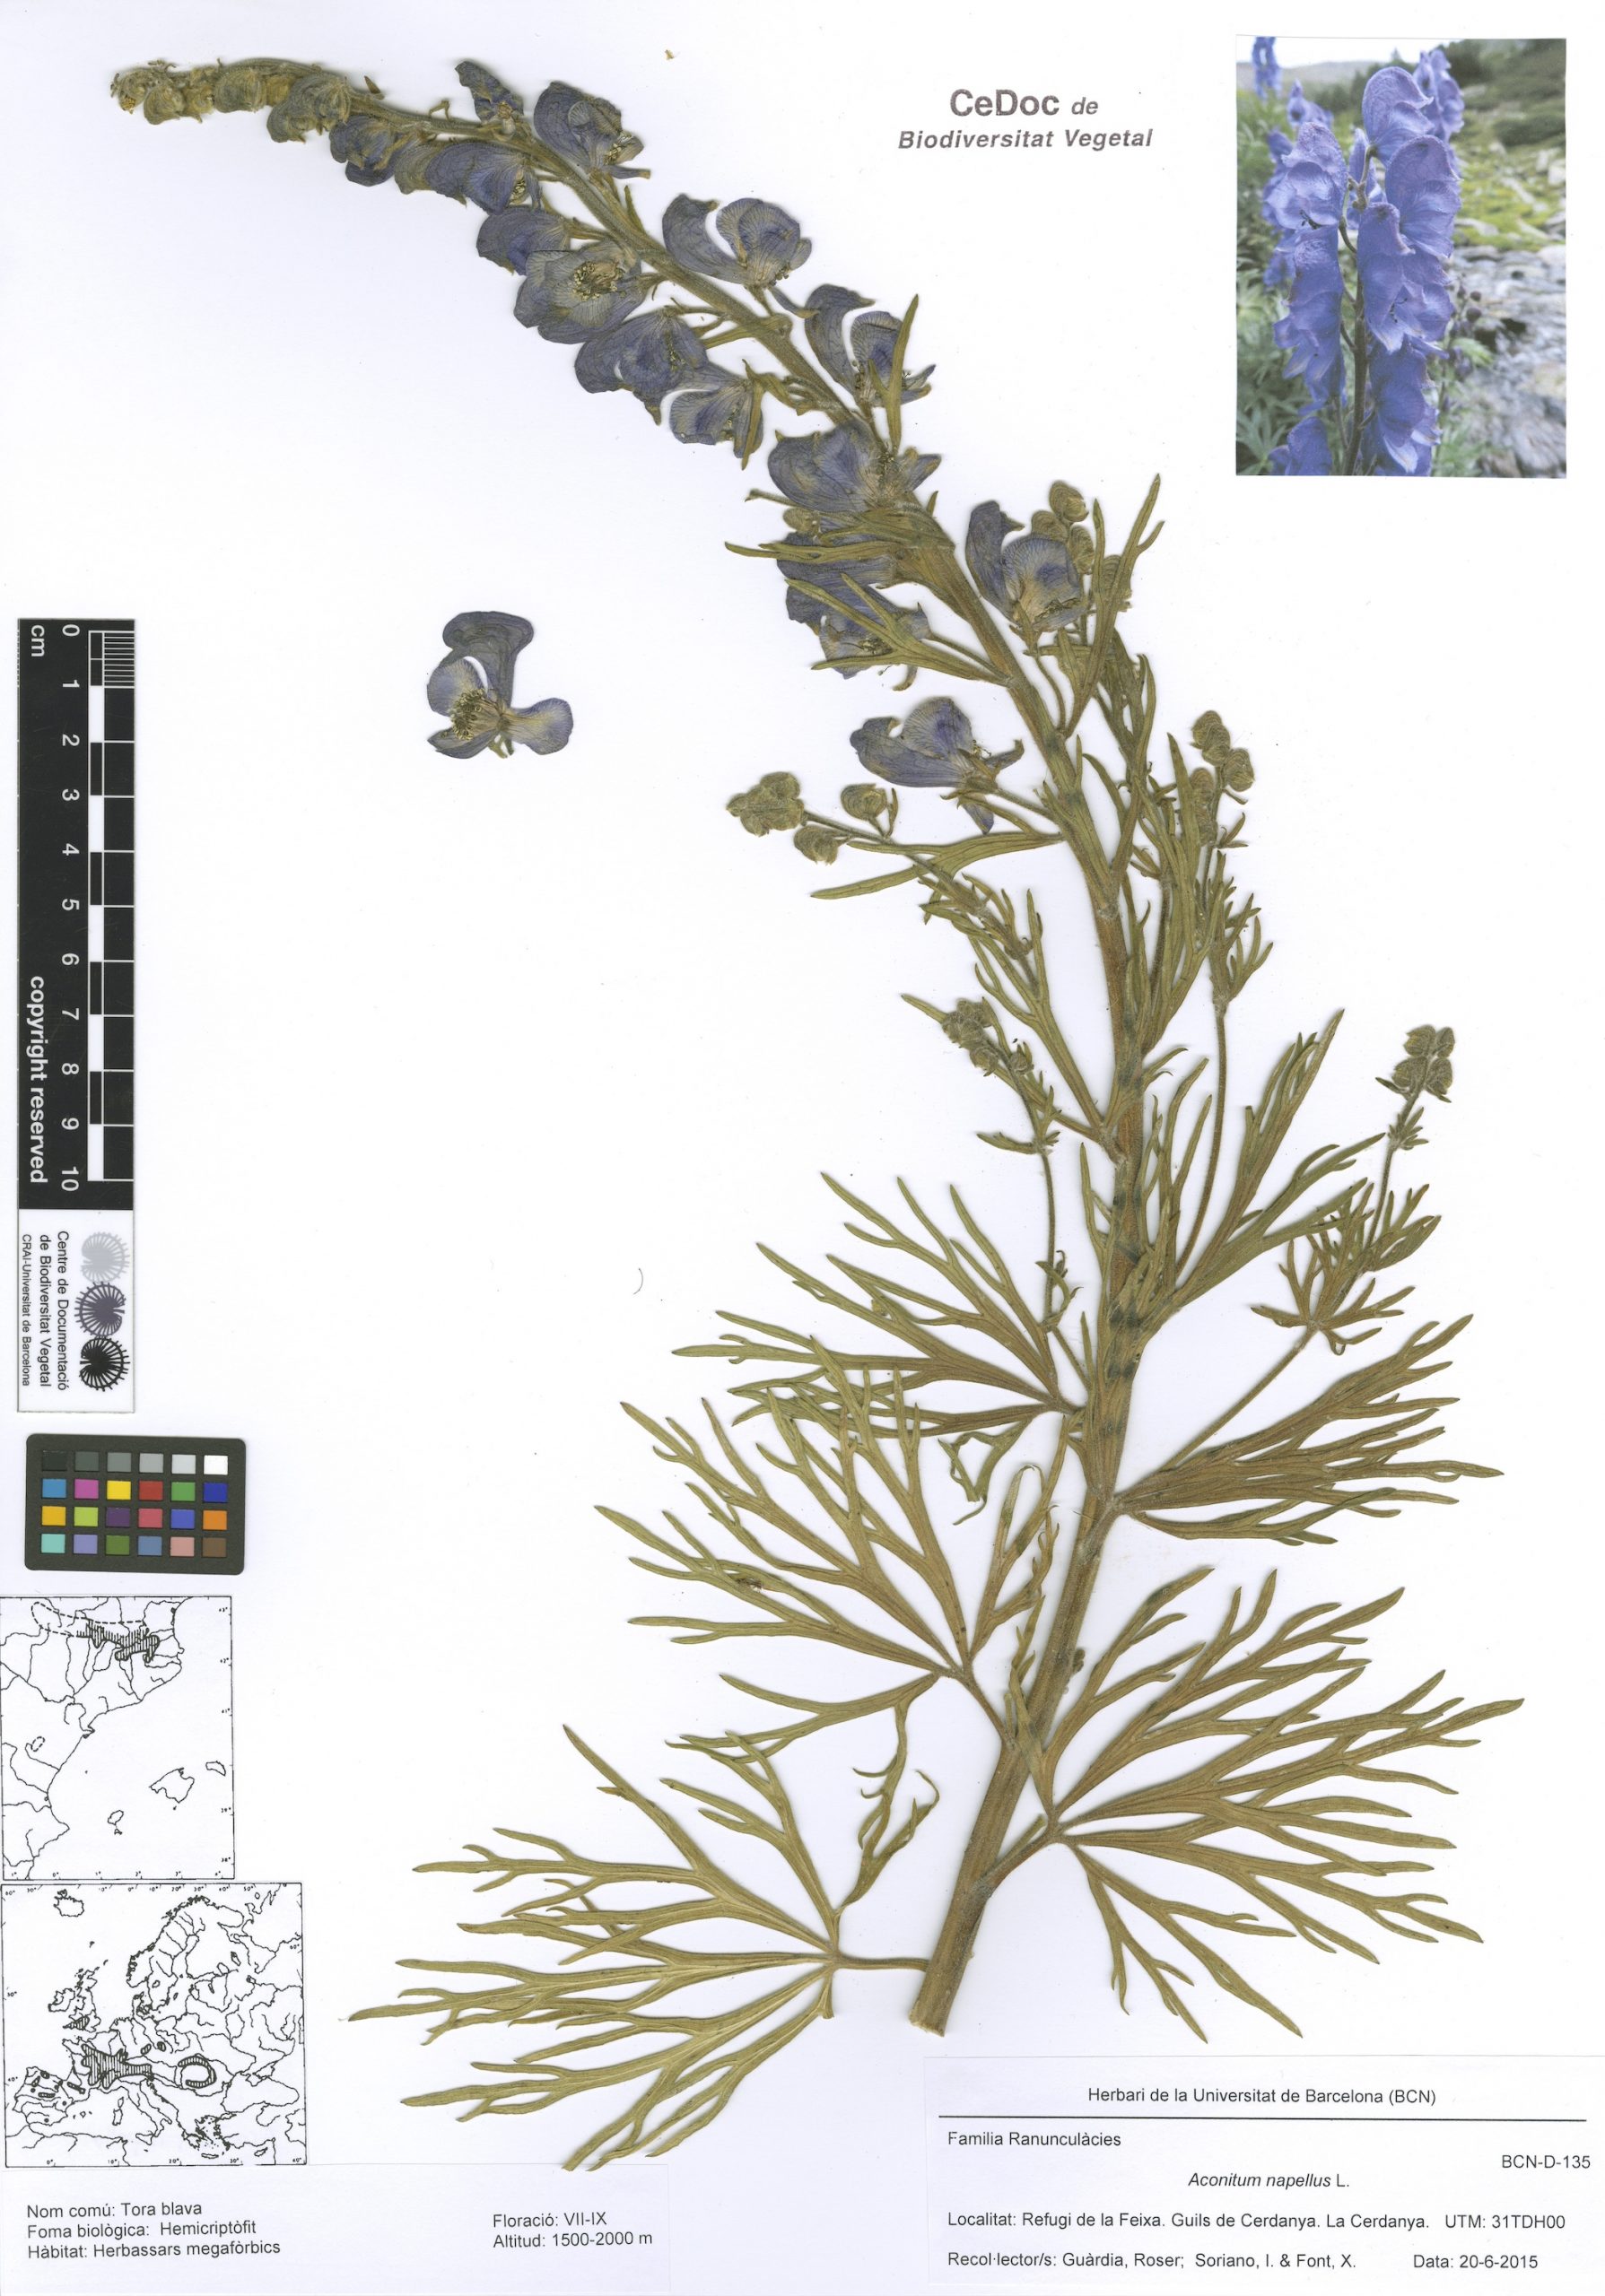 Aconitum napellus L. (Tora blava)